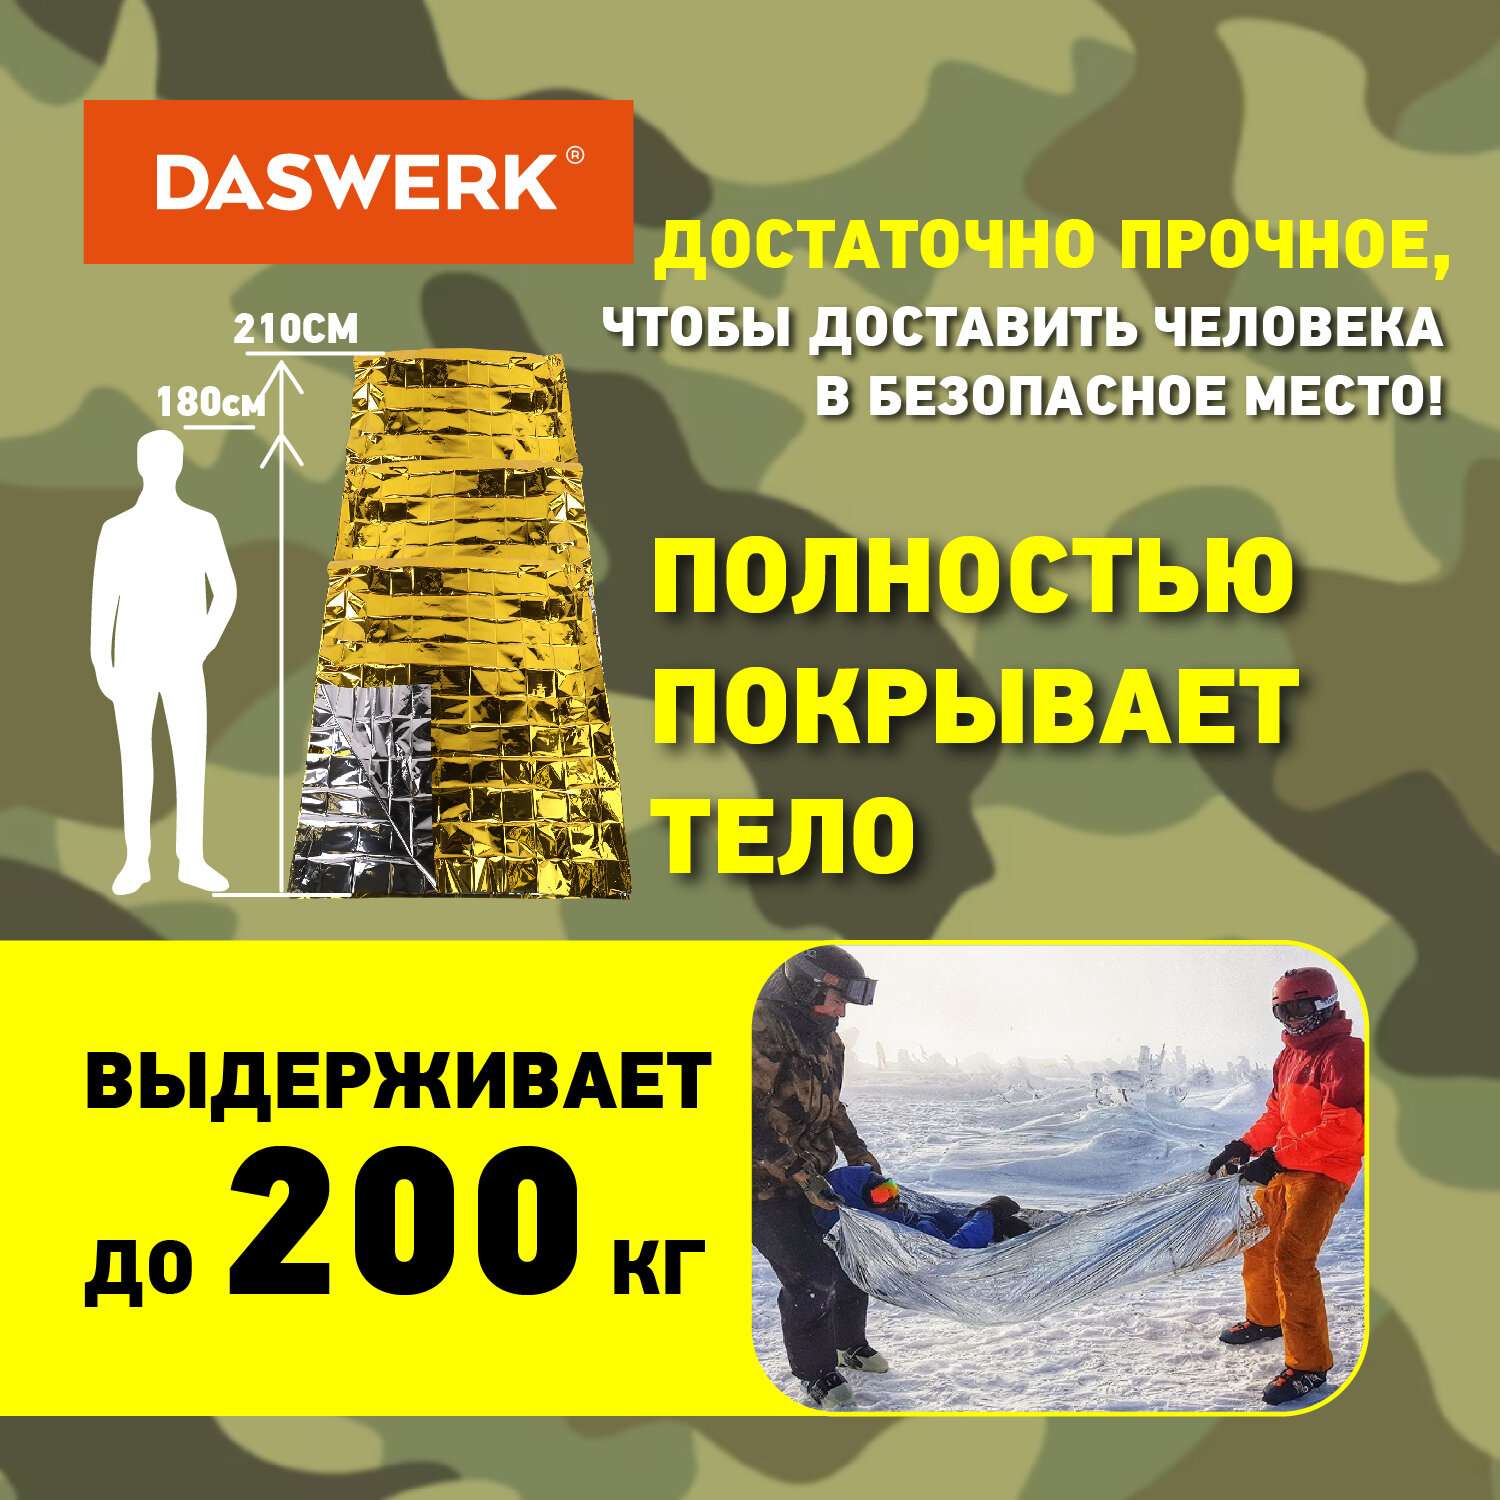 Термоодеяло DASWERK комплект 6 шт спасательное туристическое изотермическое - фото 4